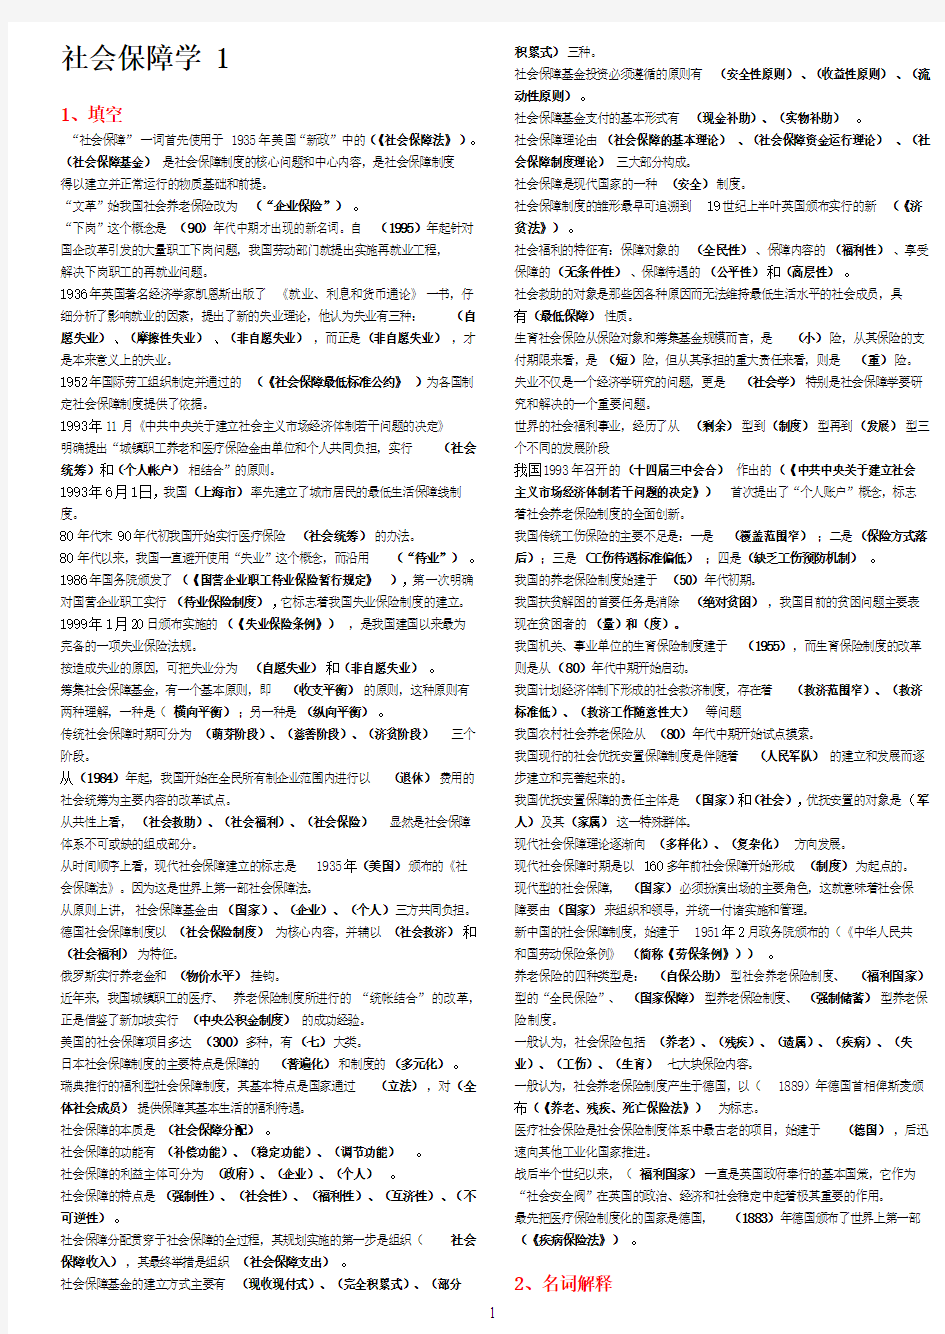 电大2011 社会保障学小抄(完美排版)